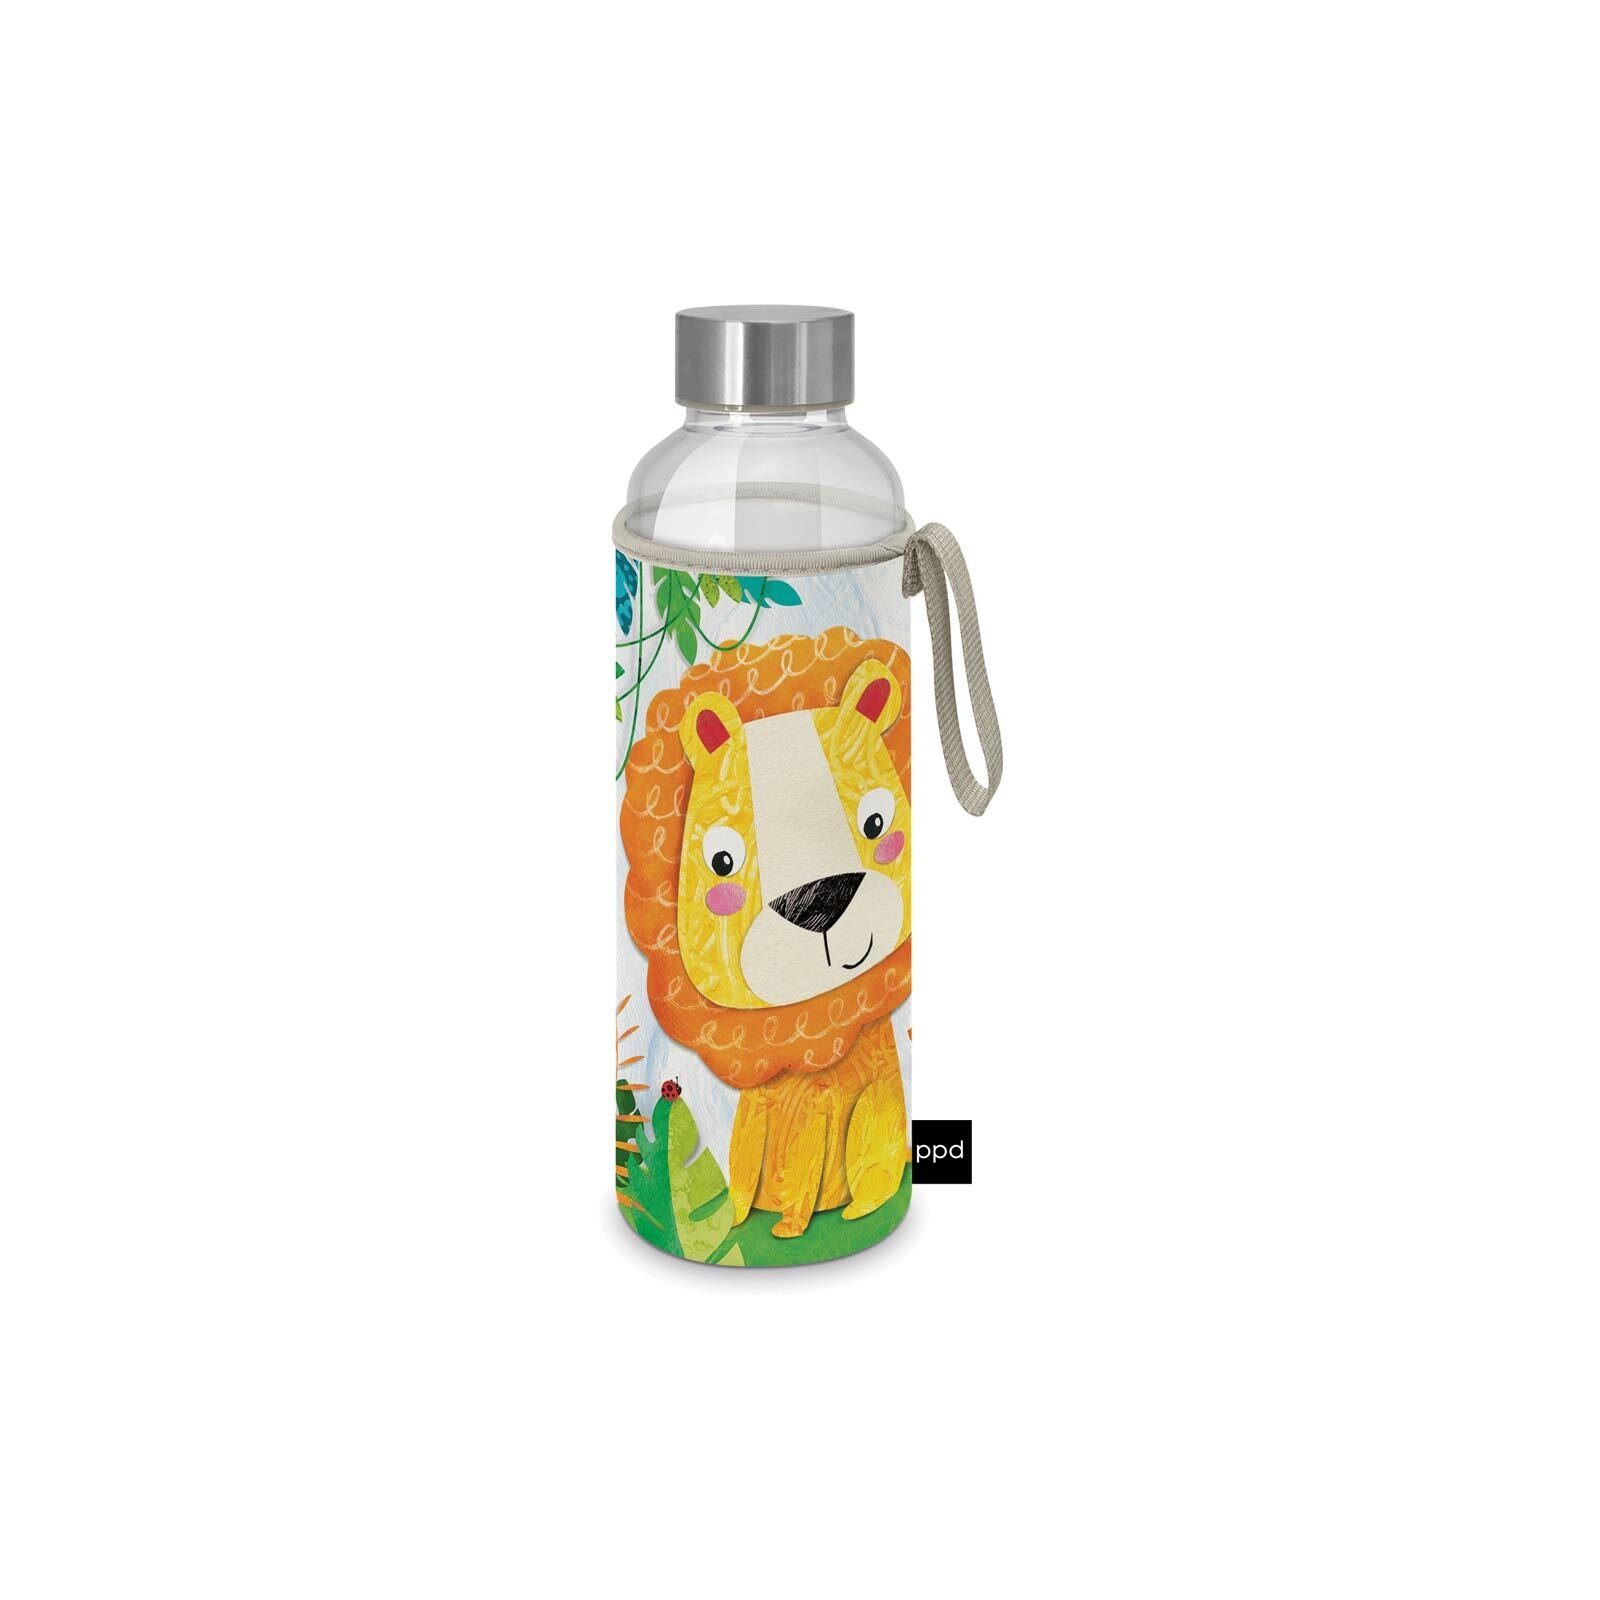 PPD Trinkflasche Glasflasche mit Lion Schutzhülle ml 500 Happy